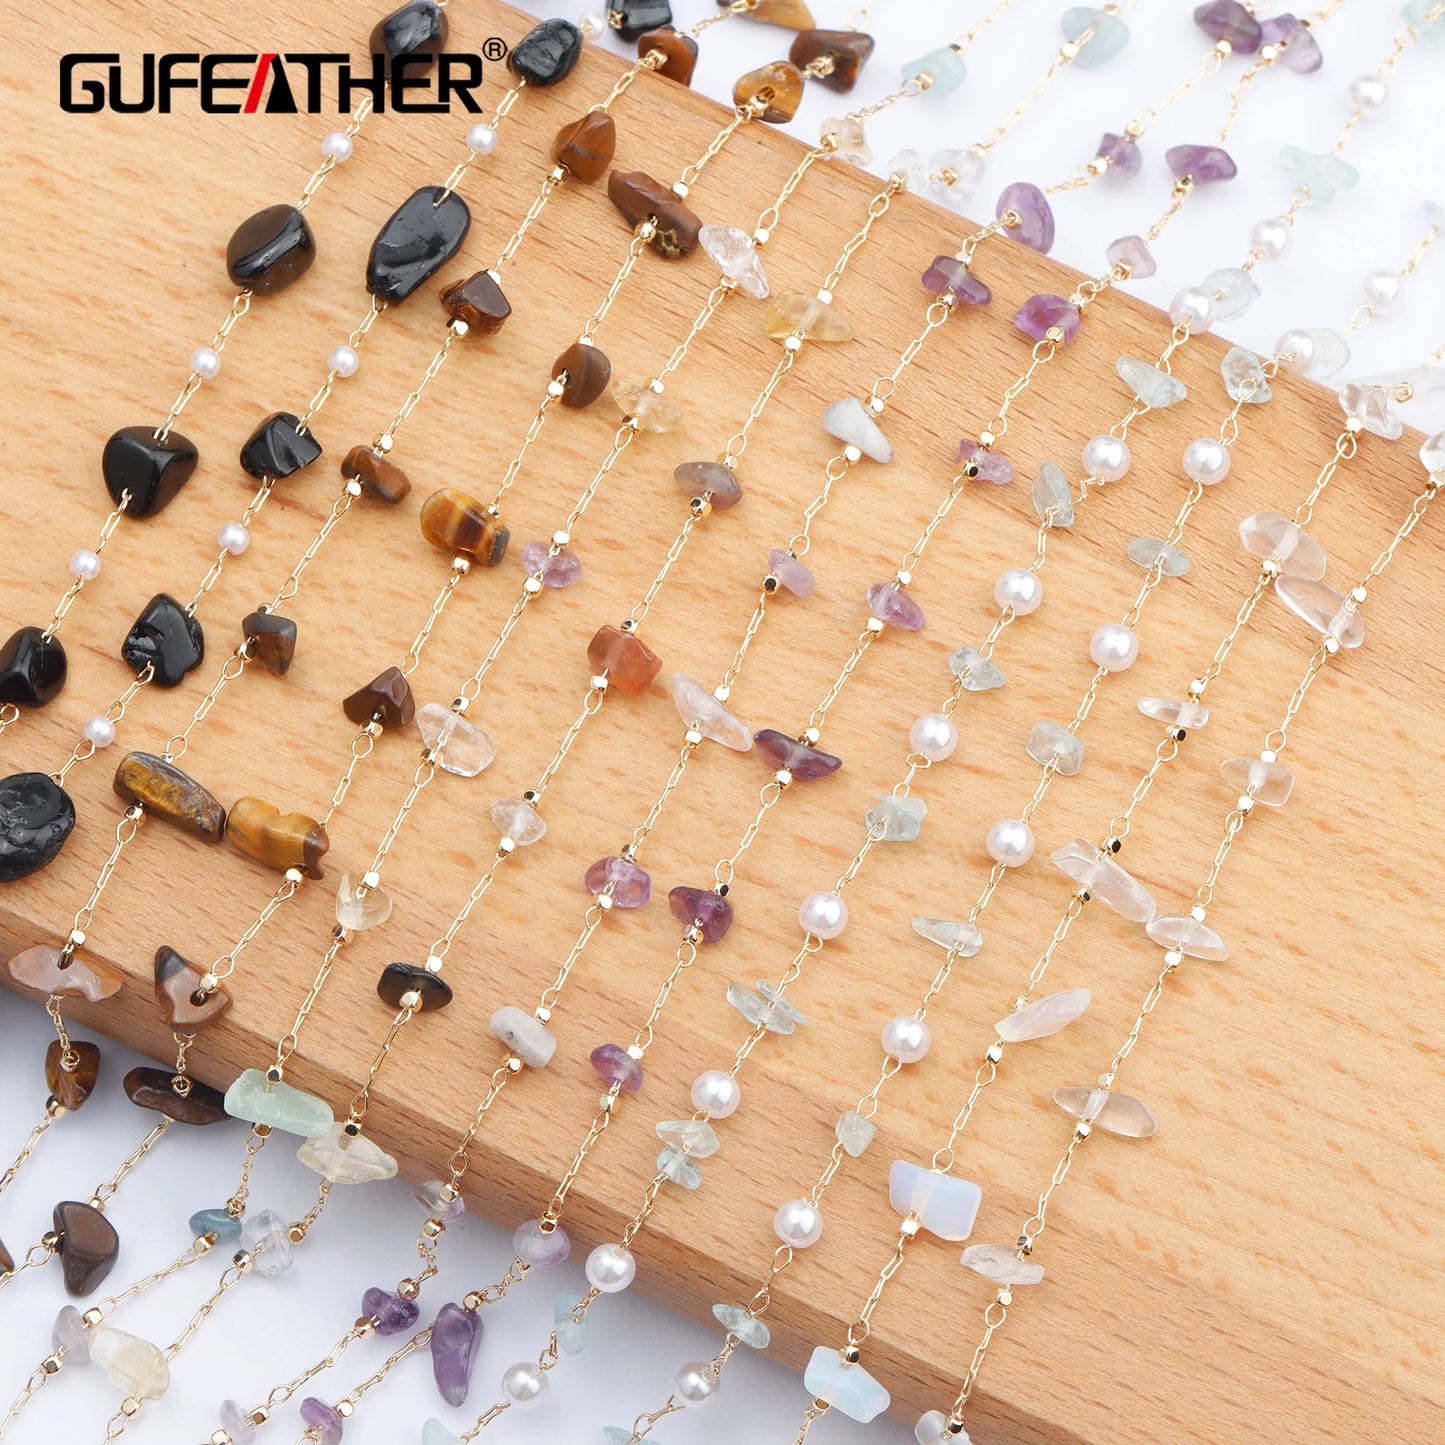 GUFEATHER C98, accessoires de bijoux, pass REACH, sans nickel, plaqué or 18 carats, chaîne de bricolage, pierre naturelle, collier de bracelet à faire soi-même, 1 m/lot 